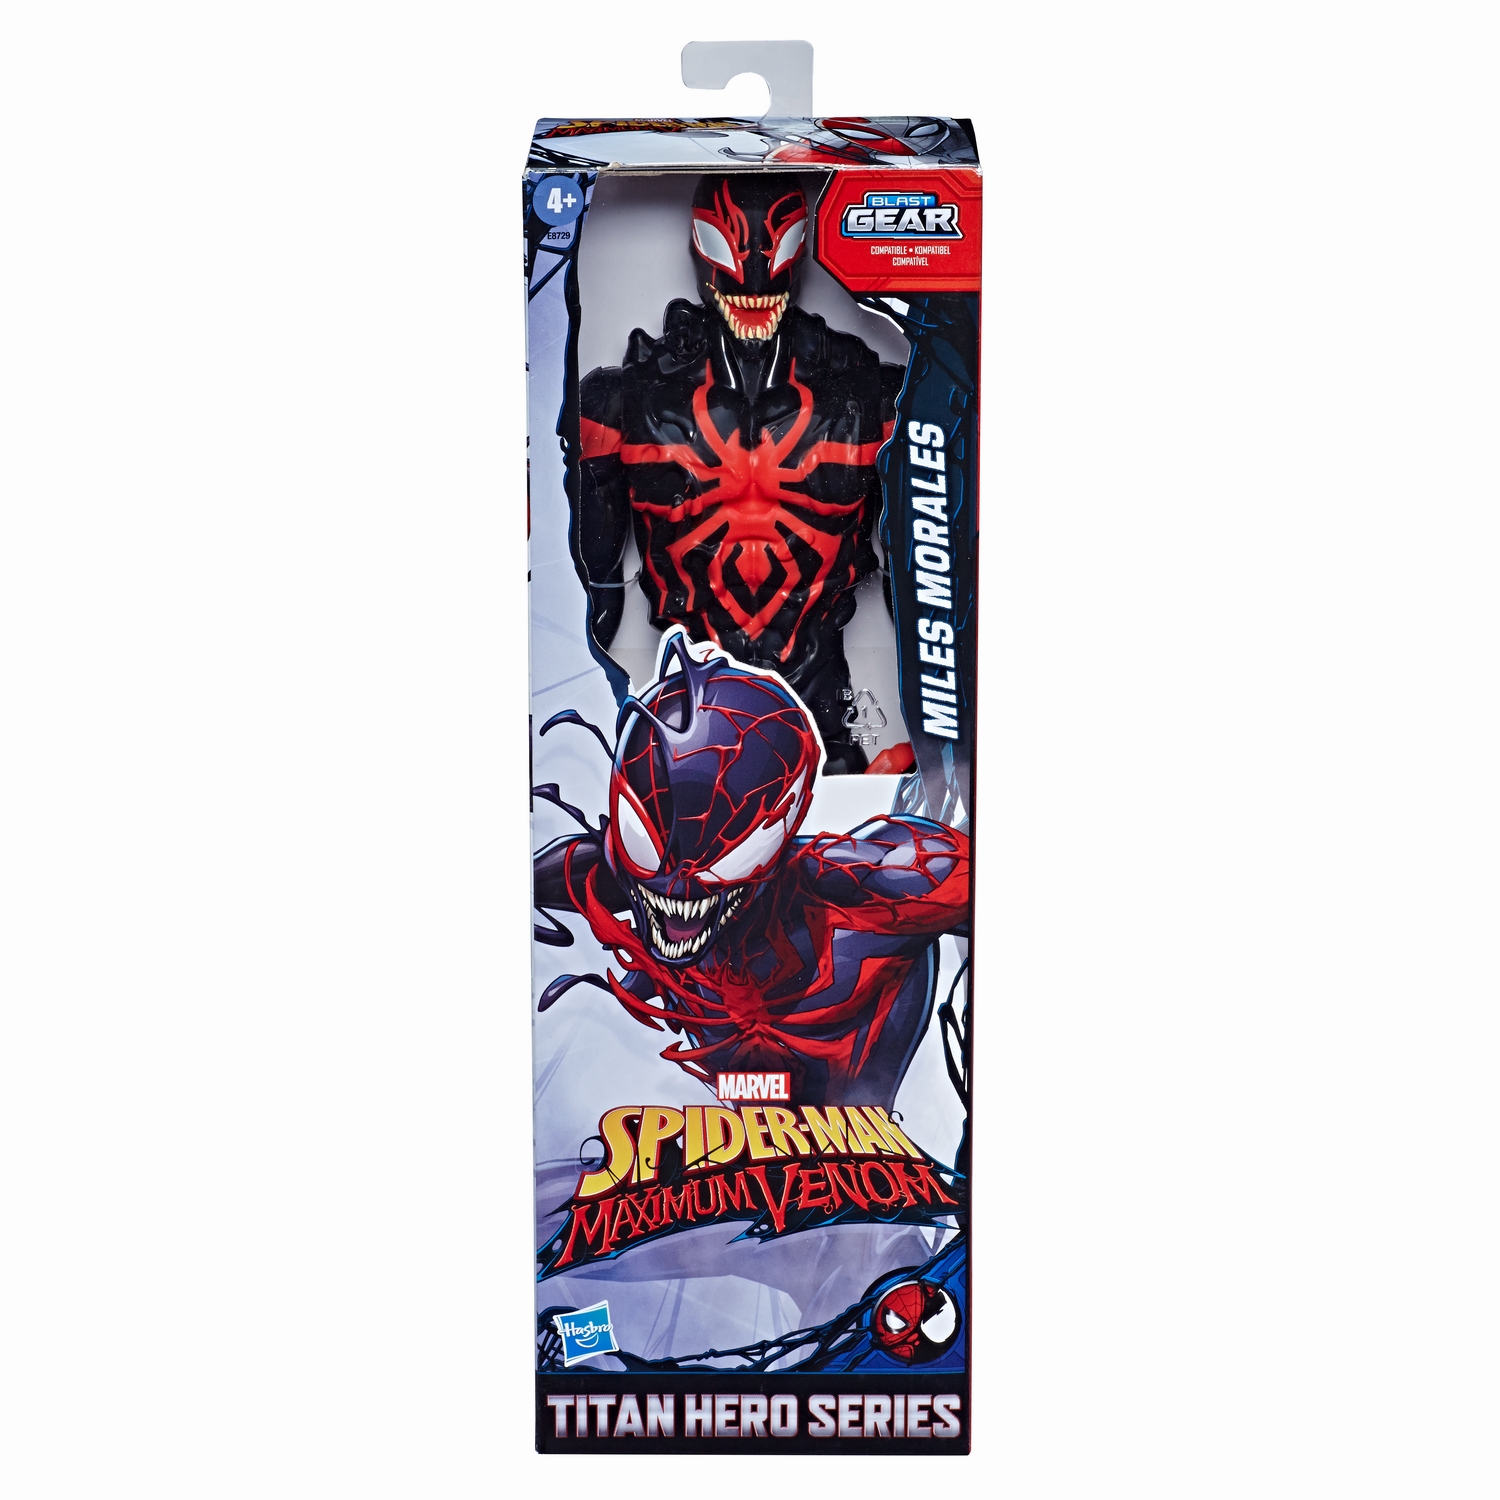 SPIDER-MAN MAXIMUM VENOM TITAN HERO MILES MORALES Figure - in pck.jpg